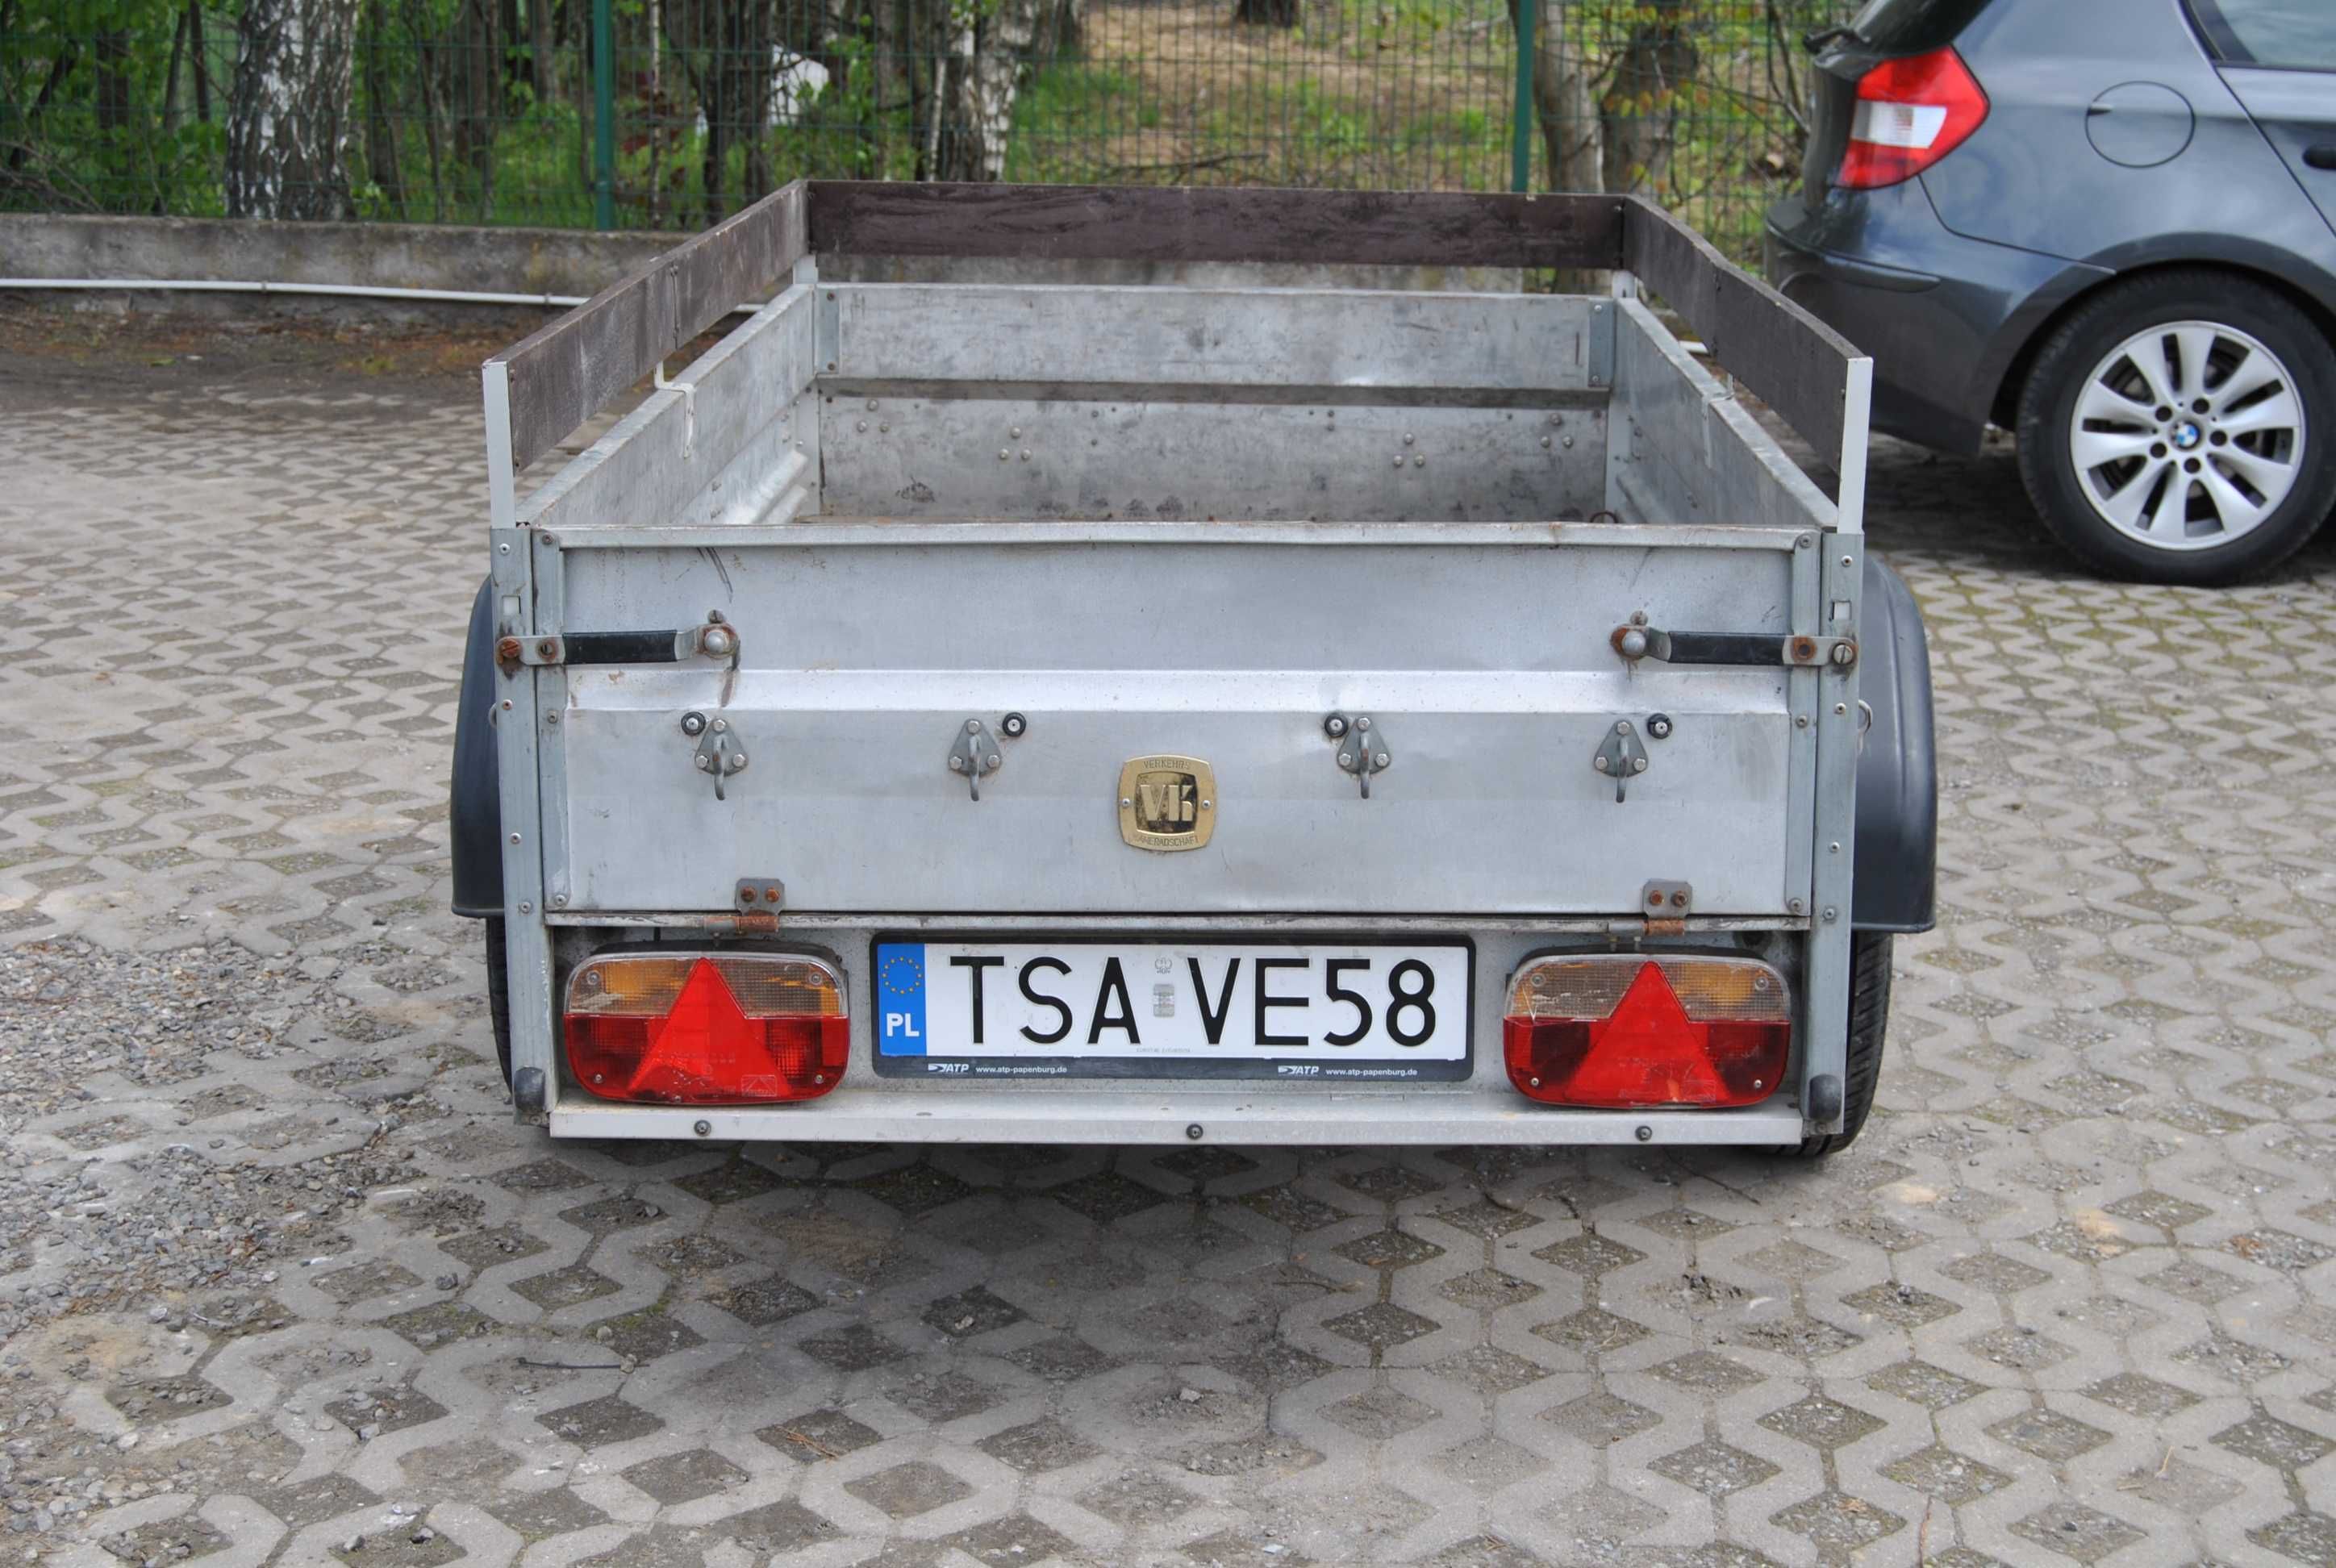 Stelma przyczepka samochodowa z Niemiec zarejestrowana do 750 kg